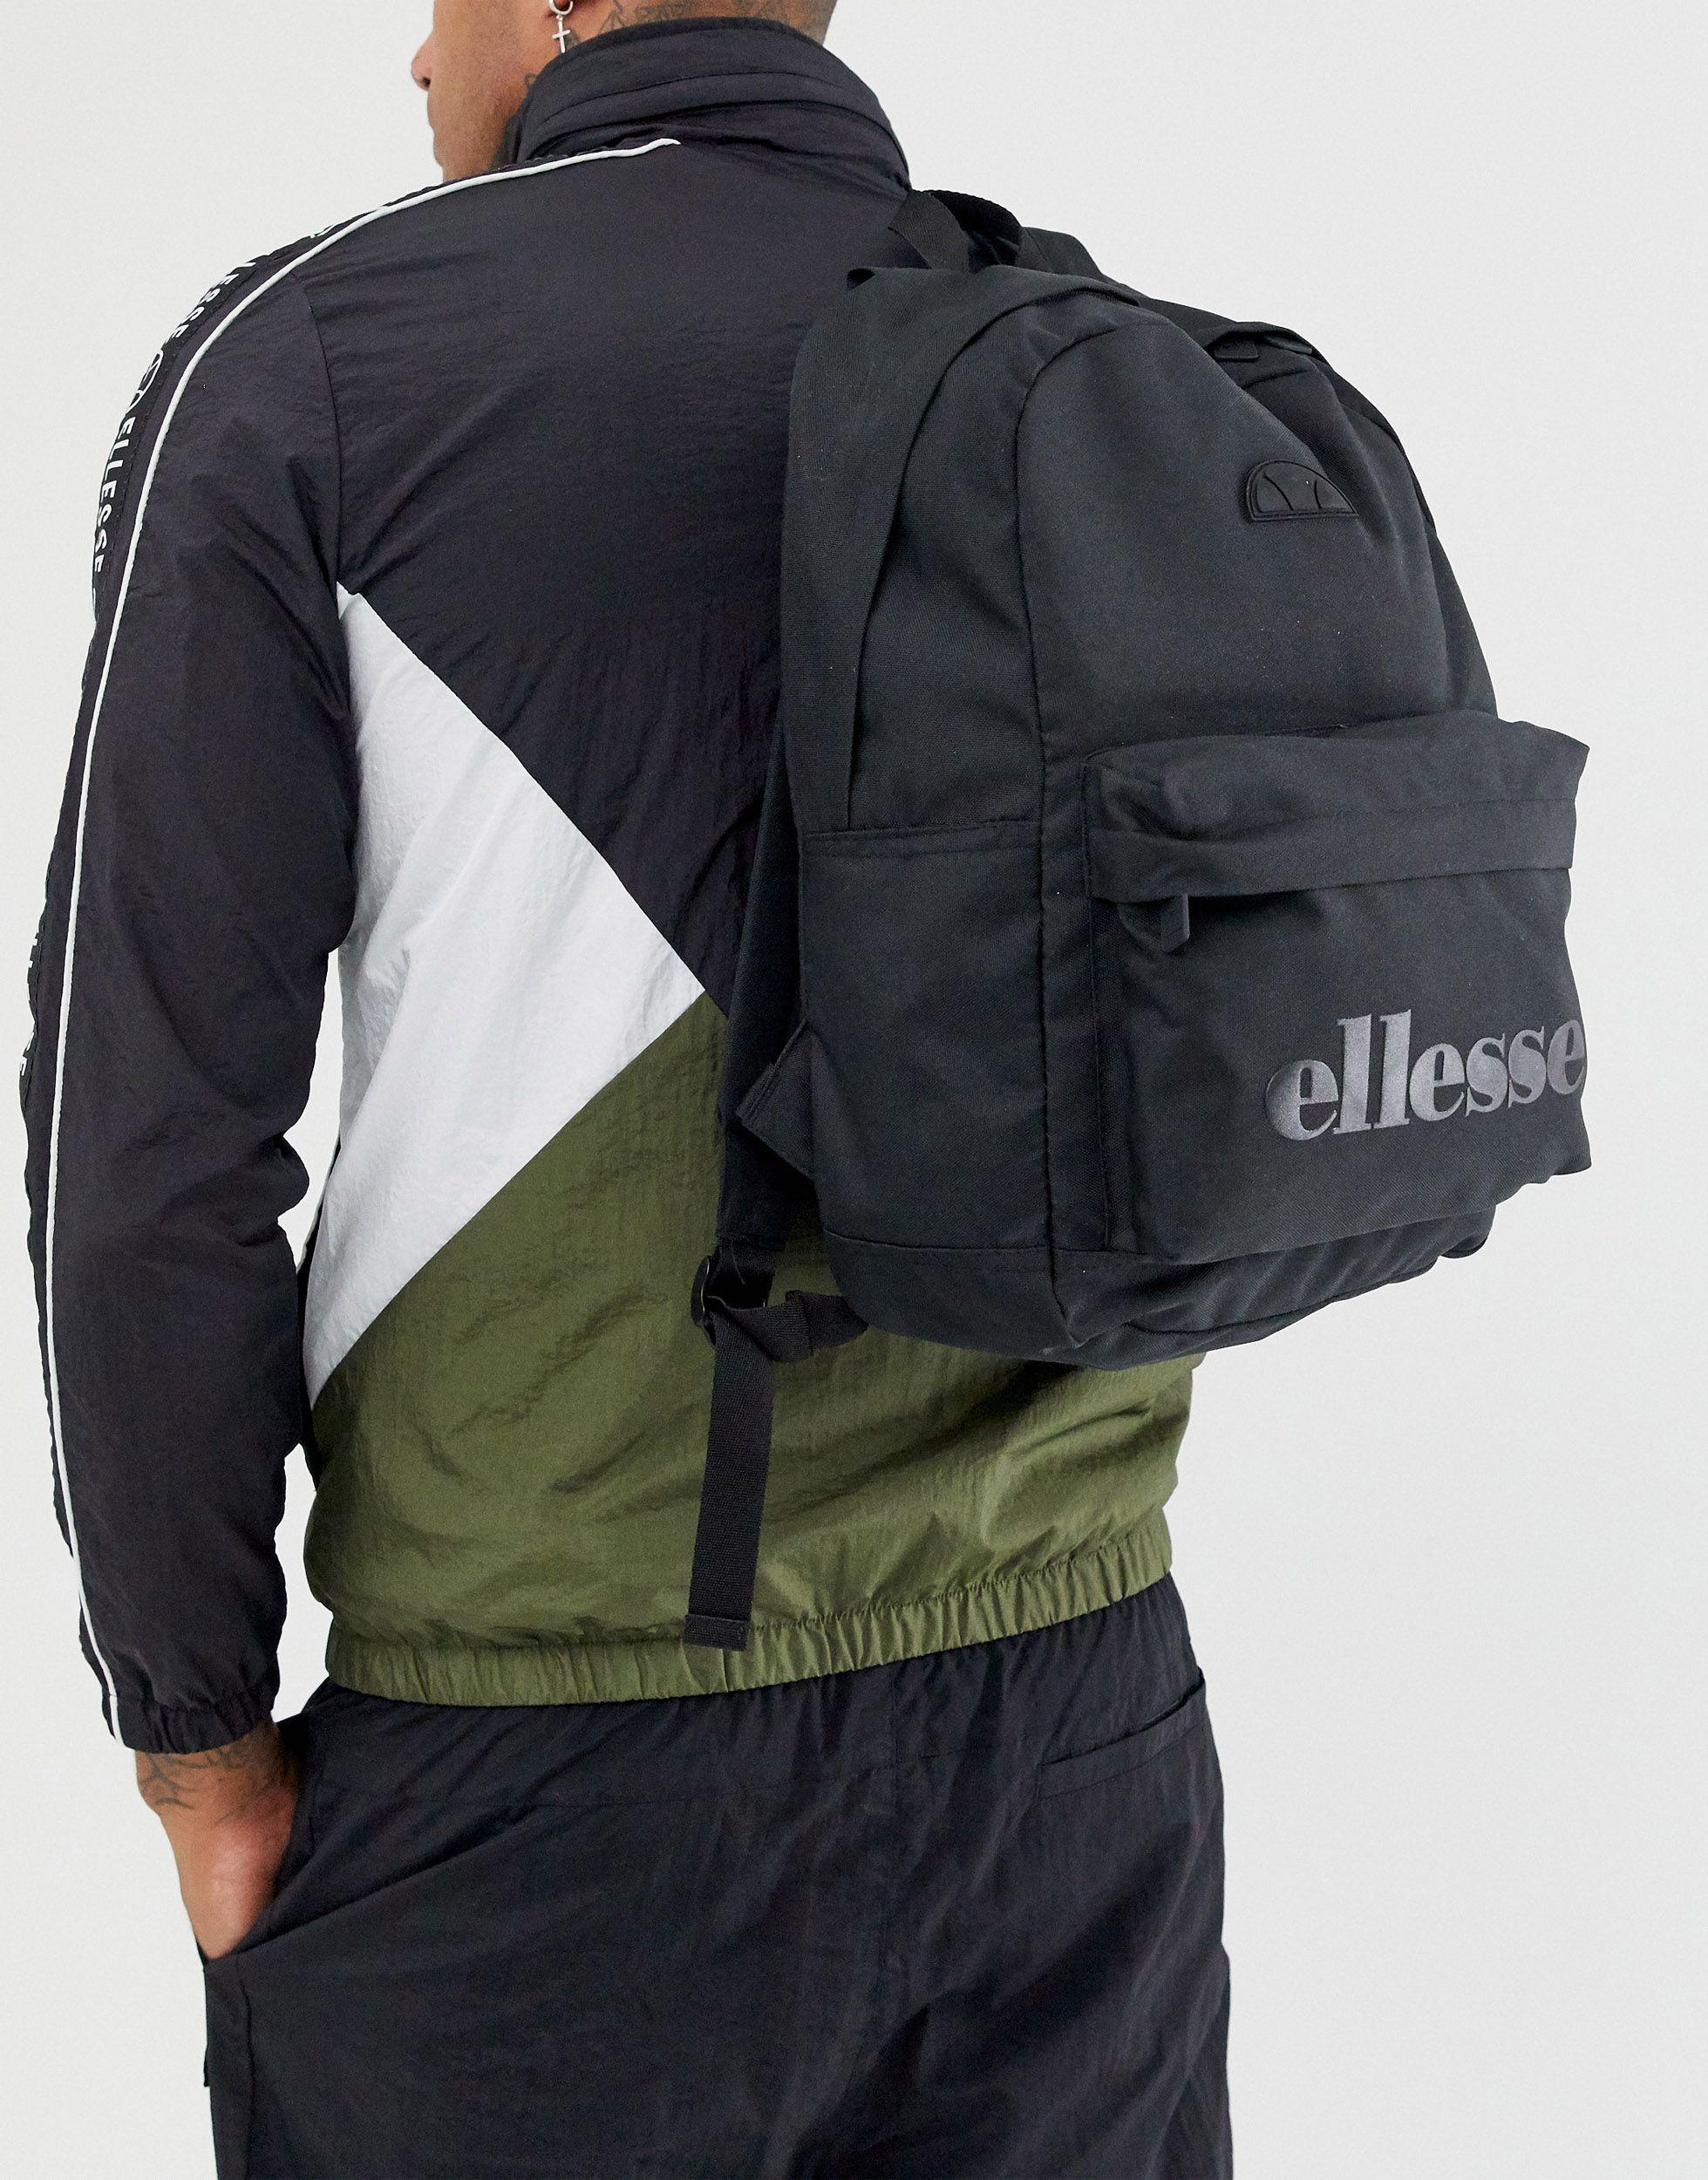 Ellesse Regent Backpack Rucksack SAAY0540black/charcoal schwarz-grau